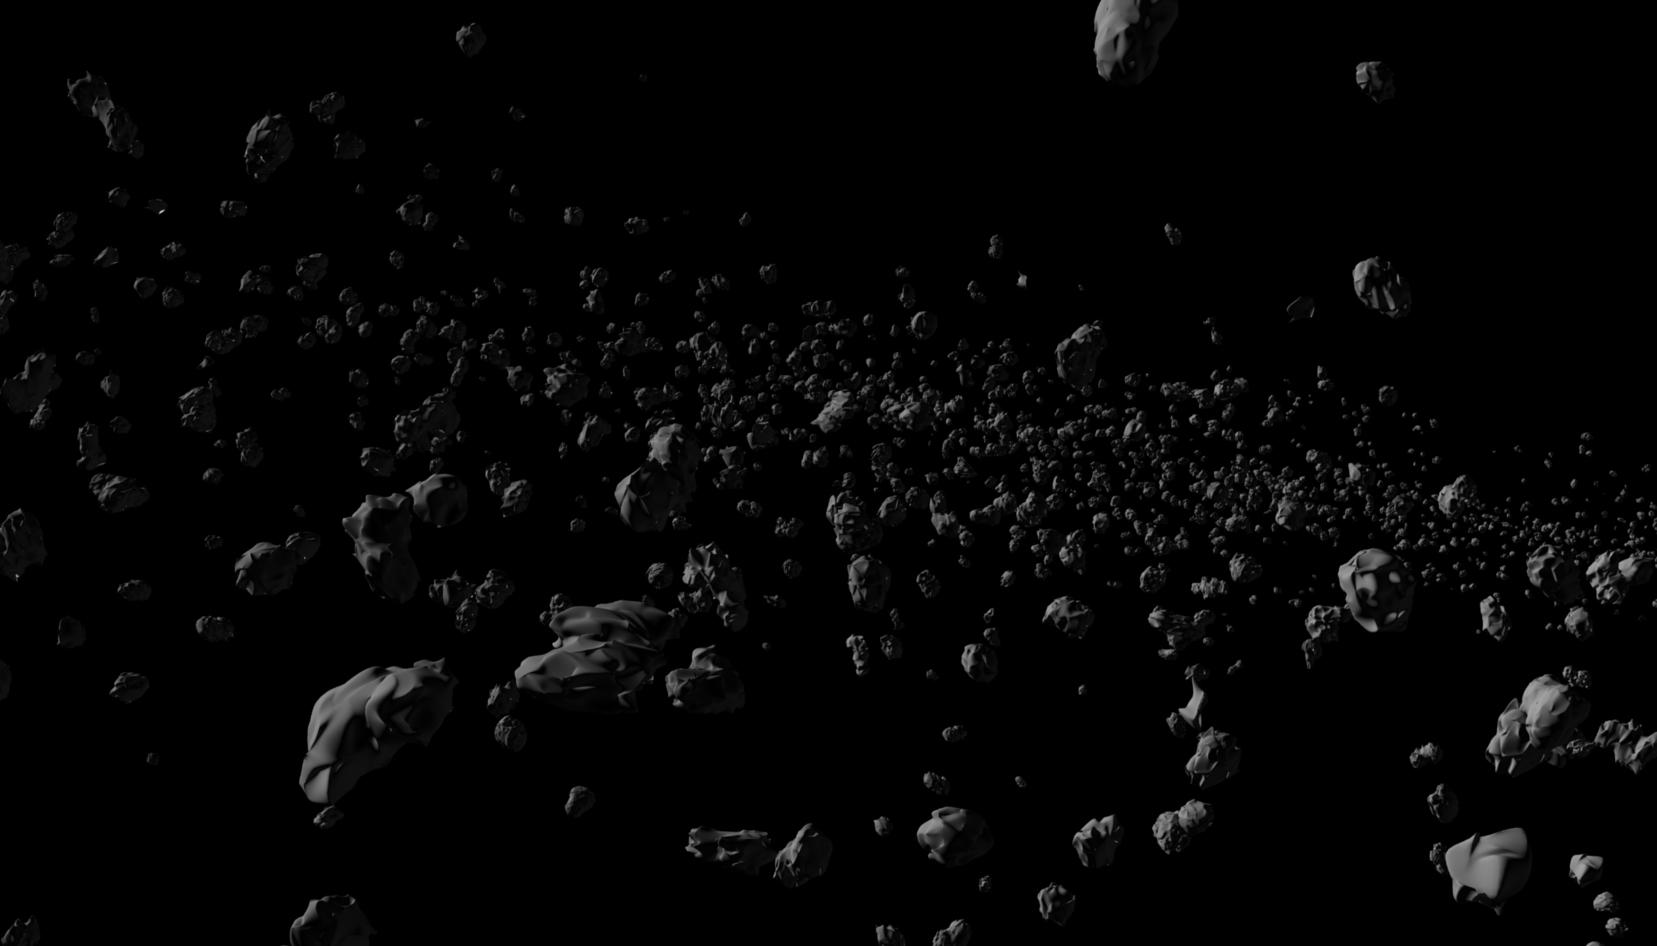 2010 07 Asteroid Belt 1 By On Prezi